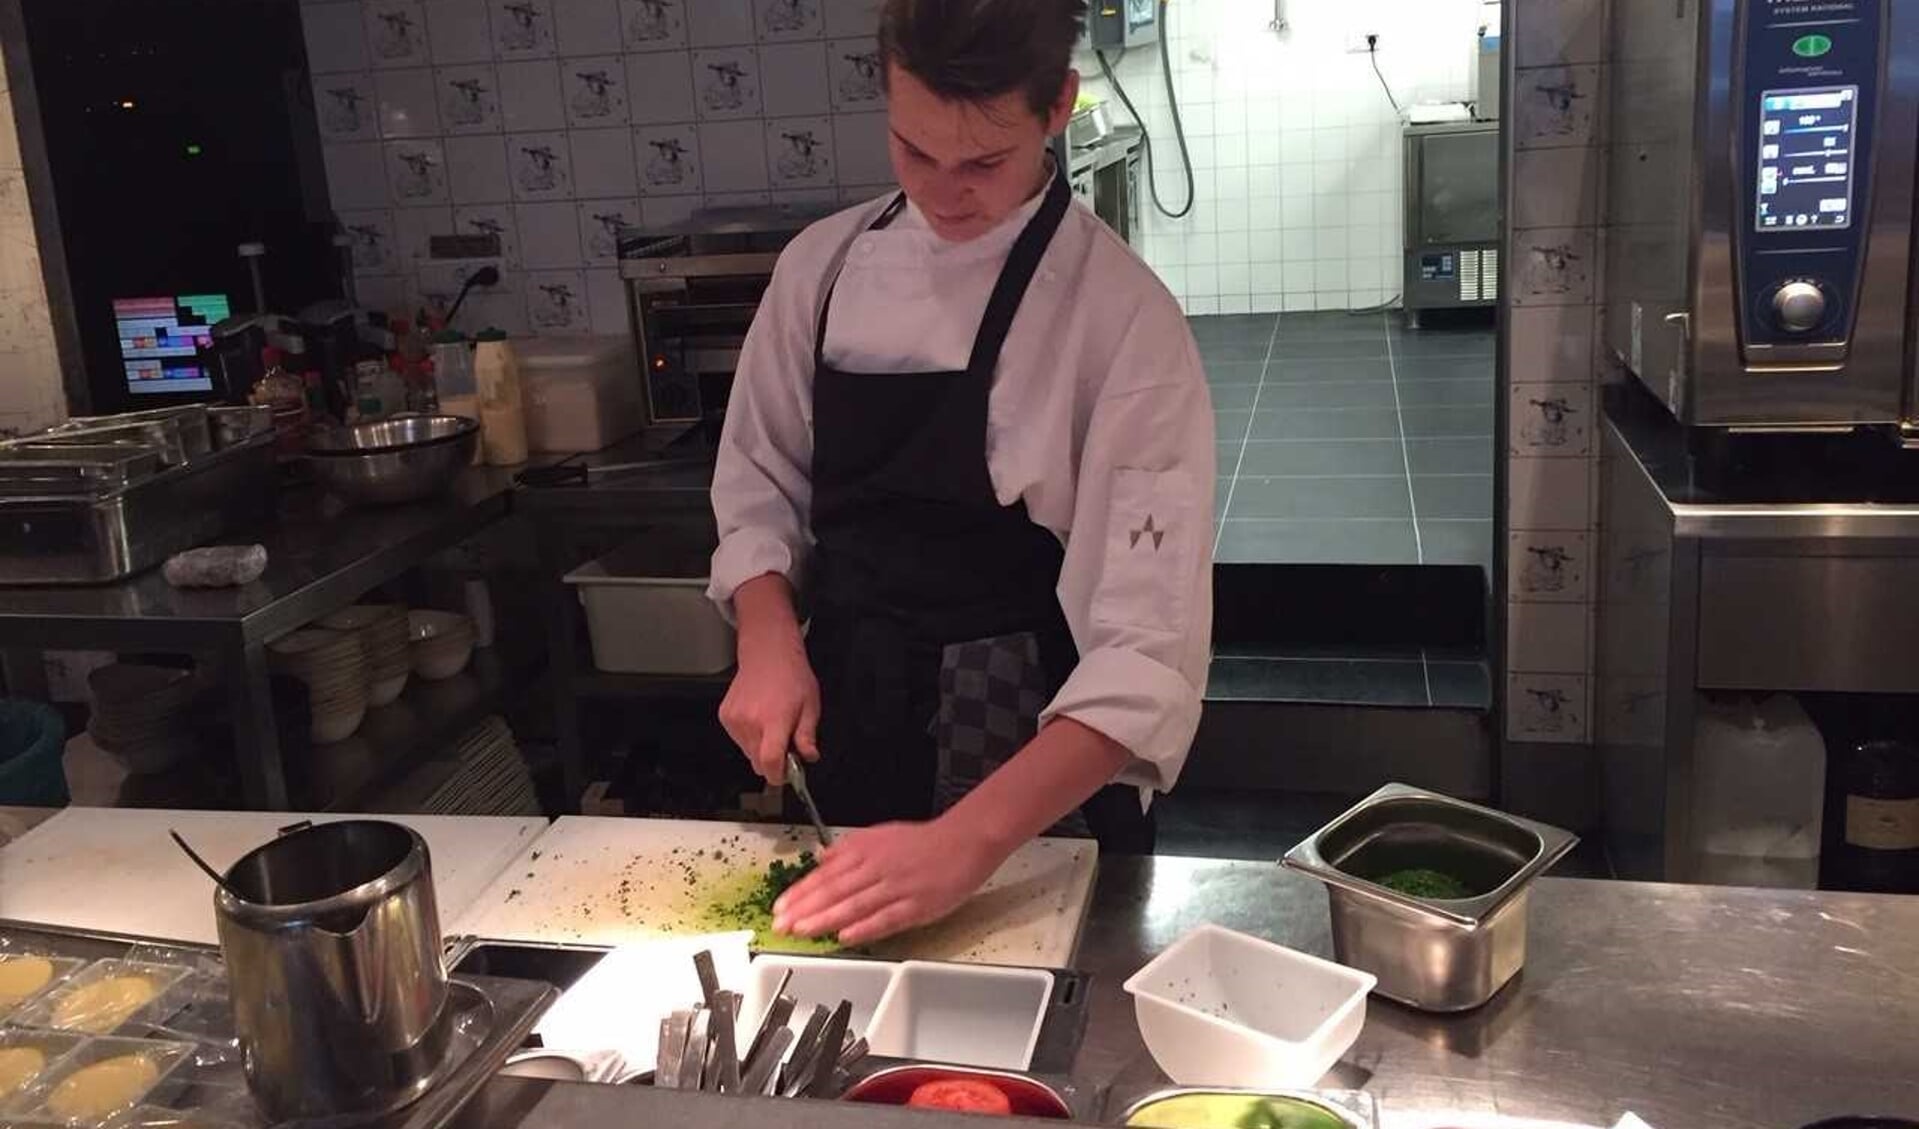 leerling Joey Lutte aan het werk in restaurant de Kroon op het Rembrandplein in Amsterdam. Joey wil kok worden.